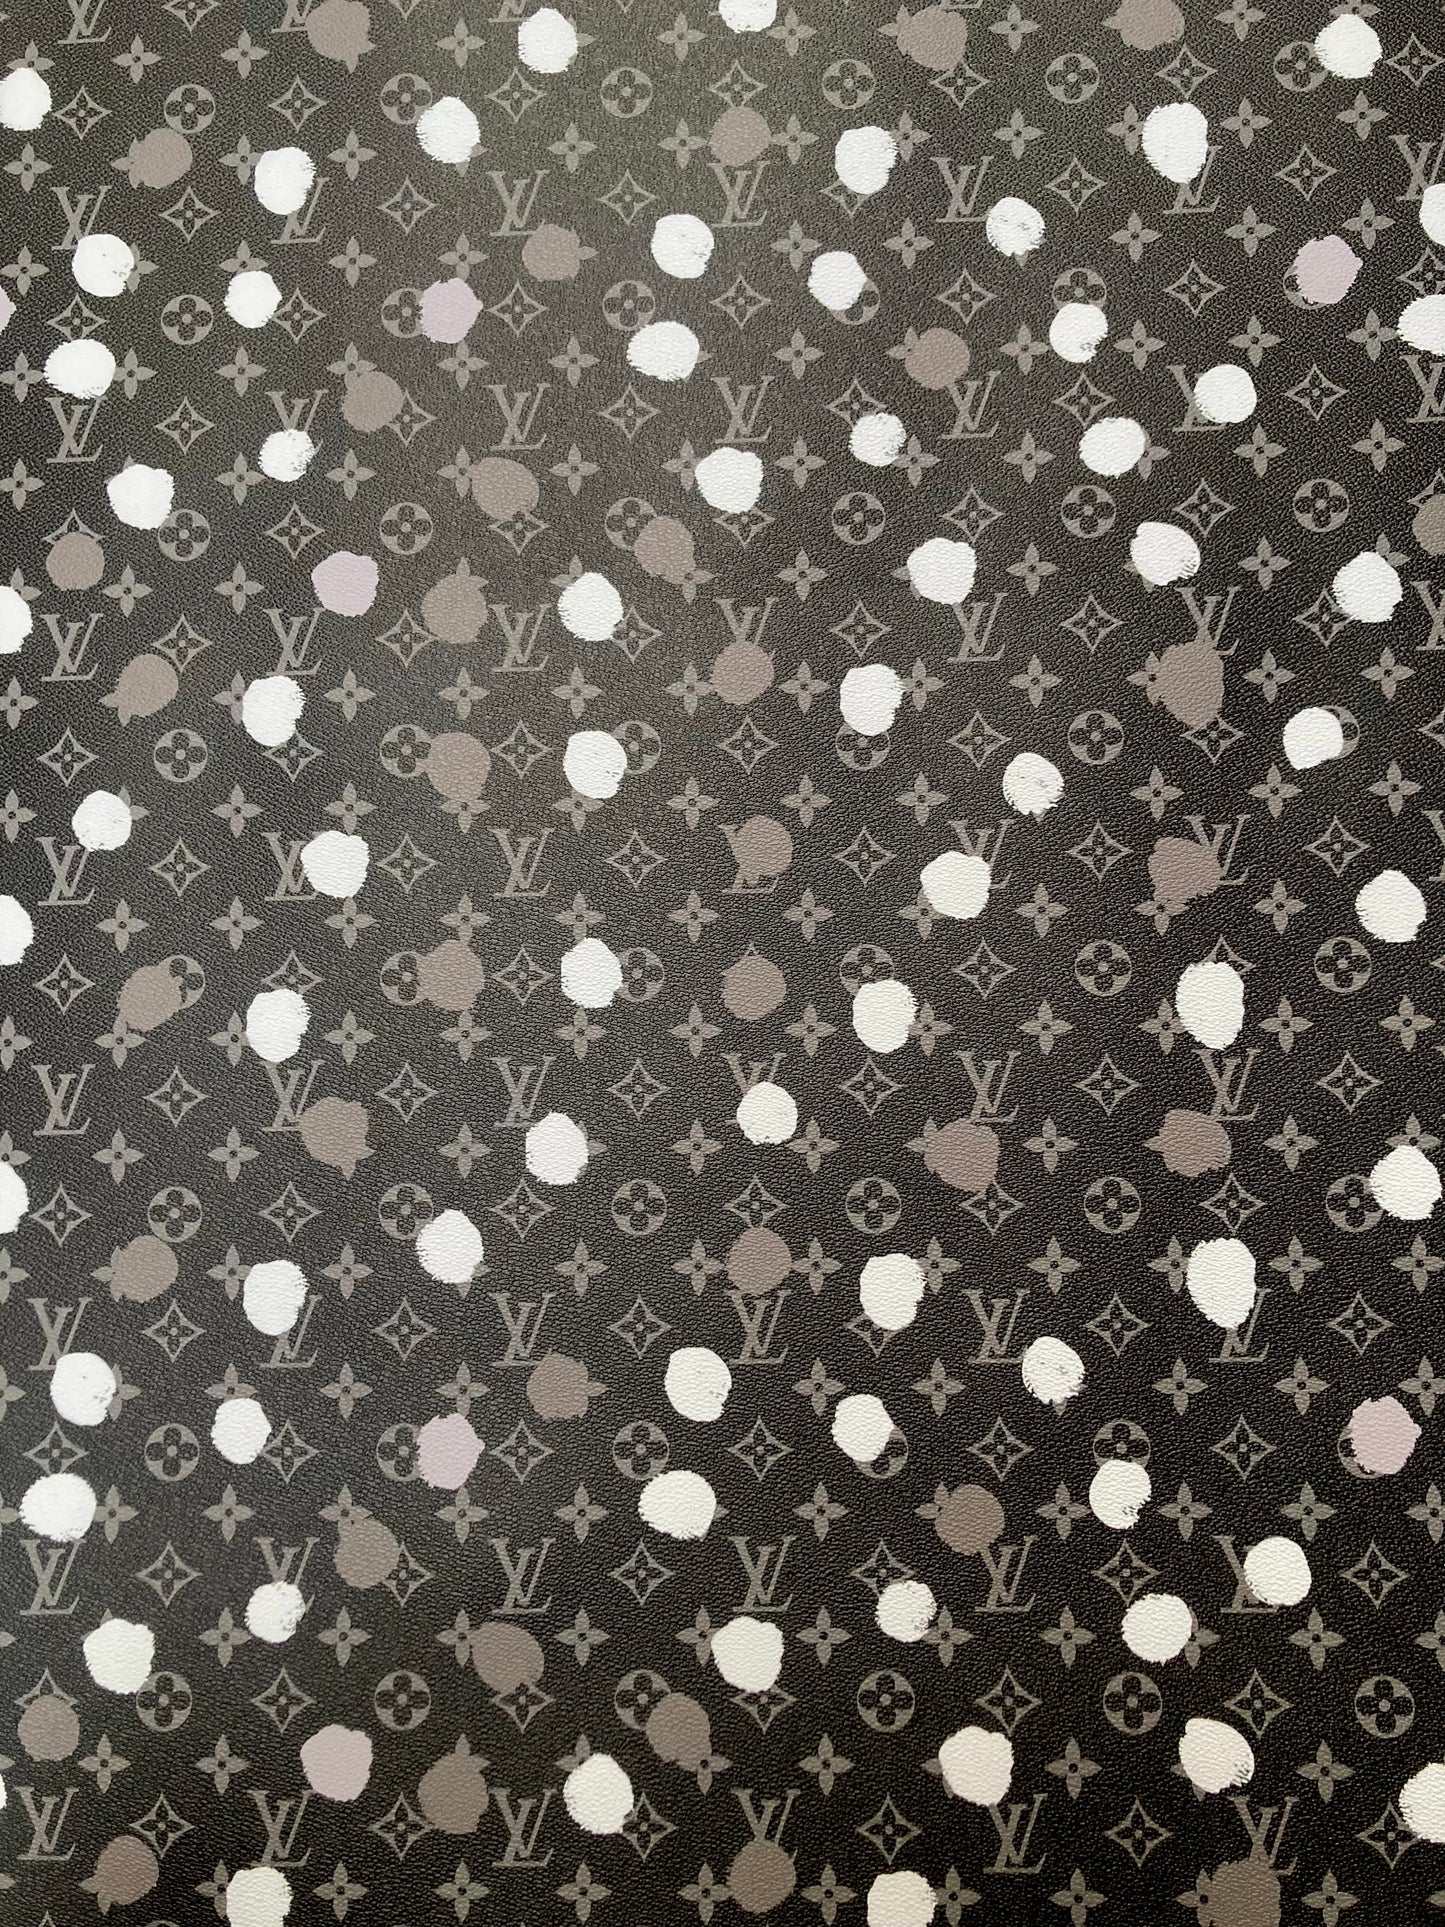 Custom Handmade Designer Leather Black White Dot LV Vinyl for Bag Upholstery